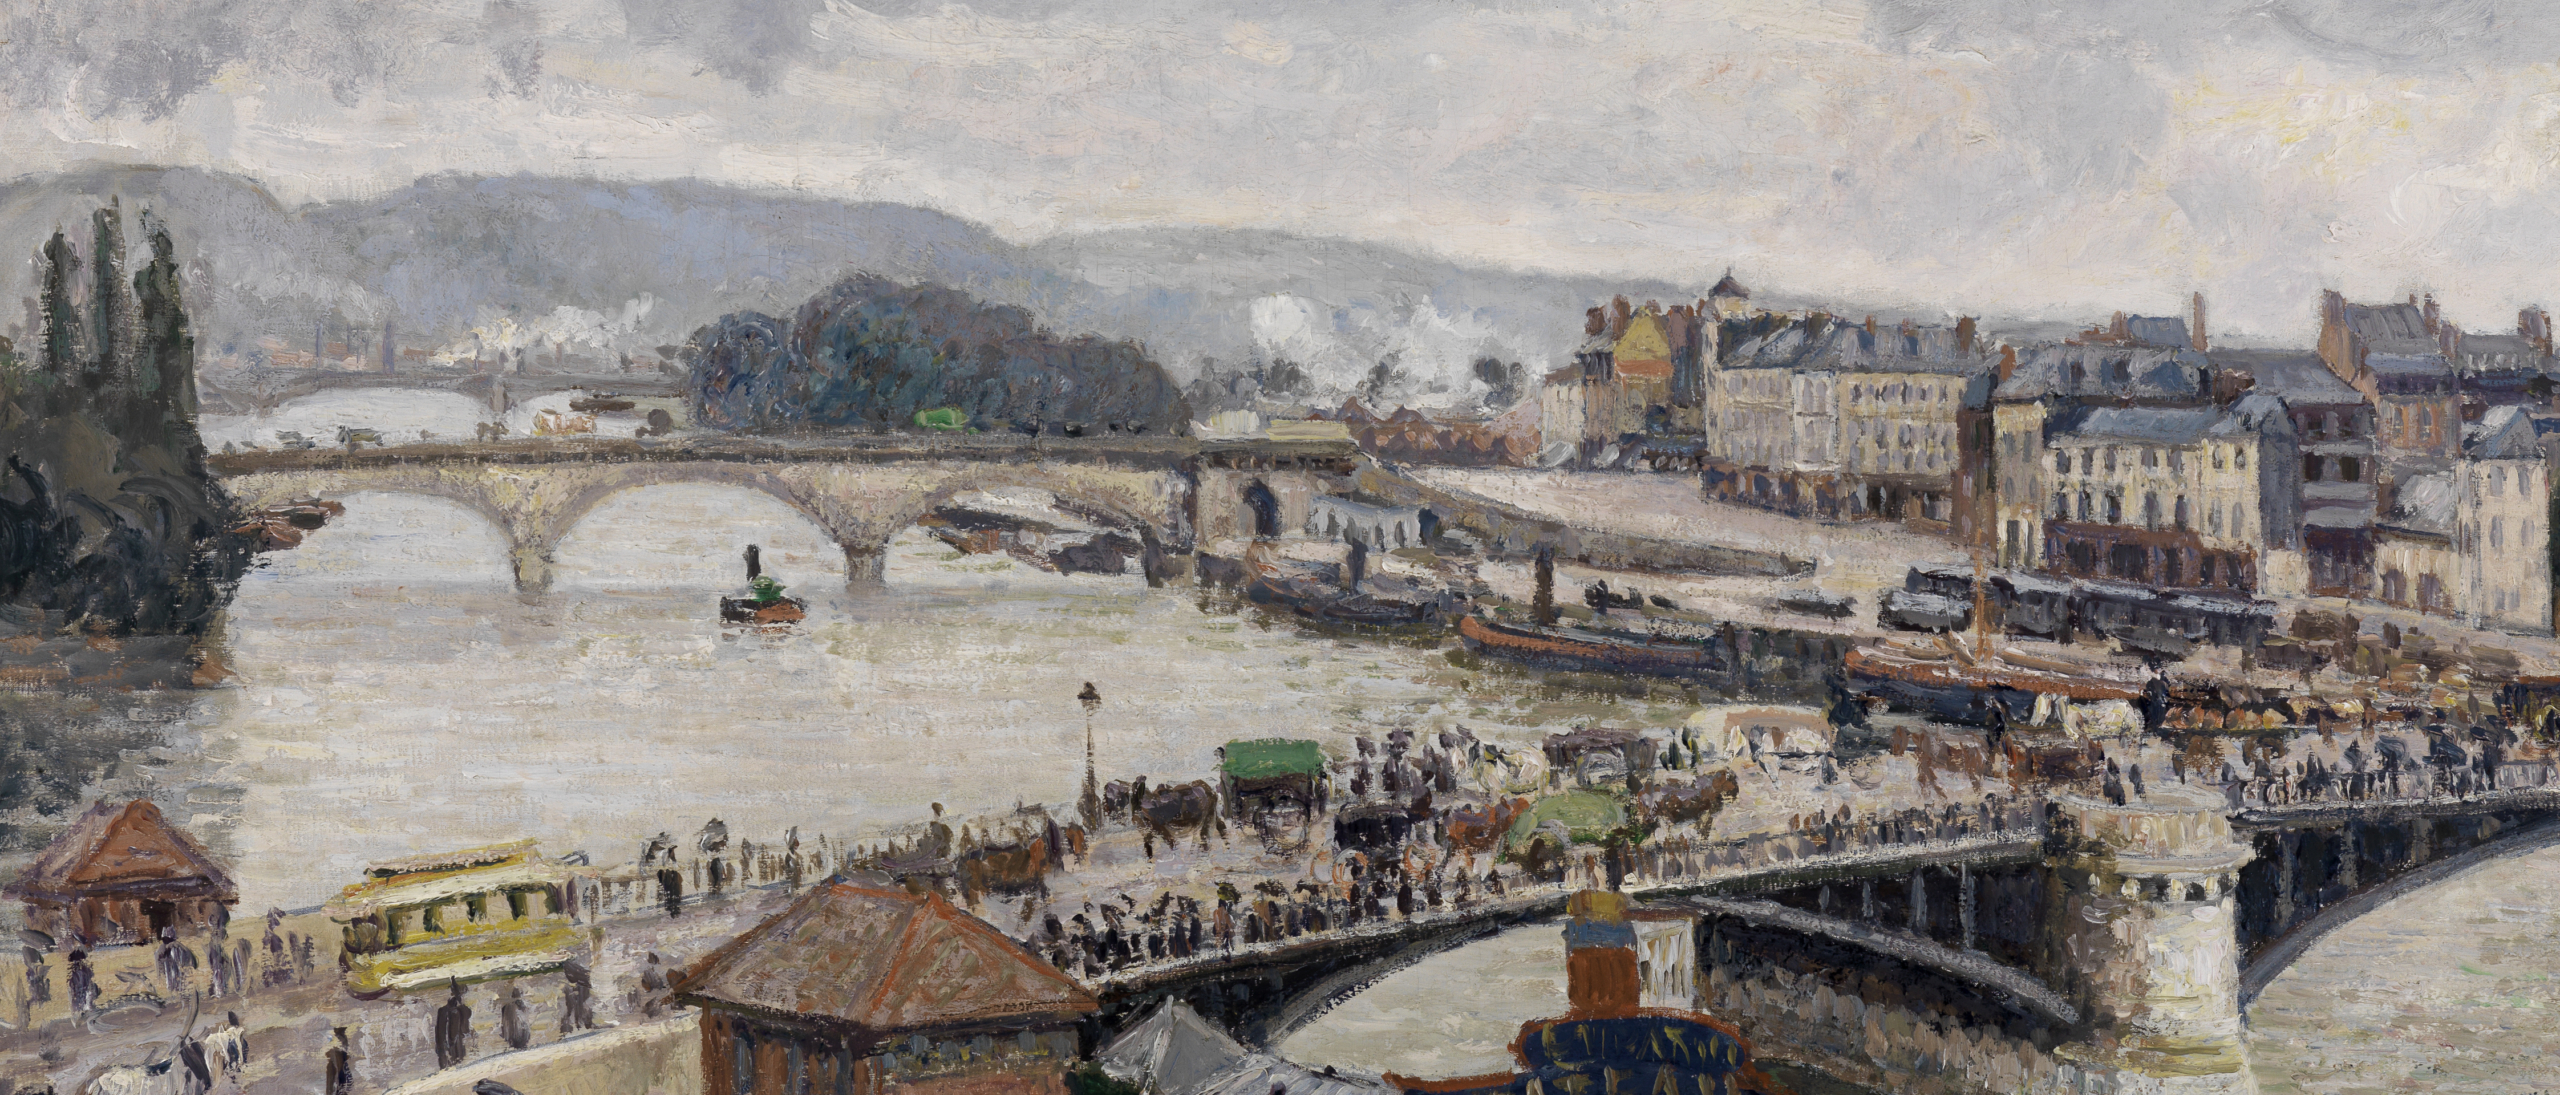 Blick auf die durch Fußgänger, Straßenbahn und Kutschen belebte Brücke zu Rouen von Camille Pissarro. Im Hintergrund führt eine weitere Brücke über den Fluss, das rechte Ufer säumen hohe Häuser.